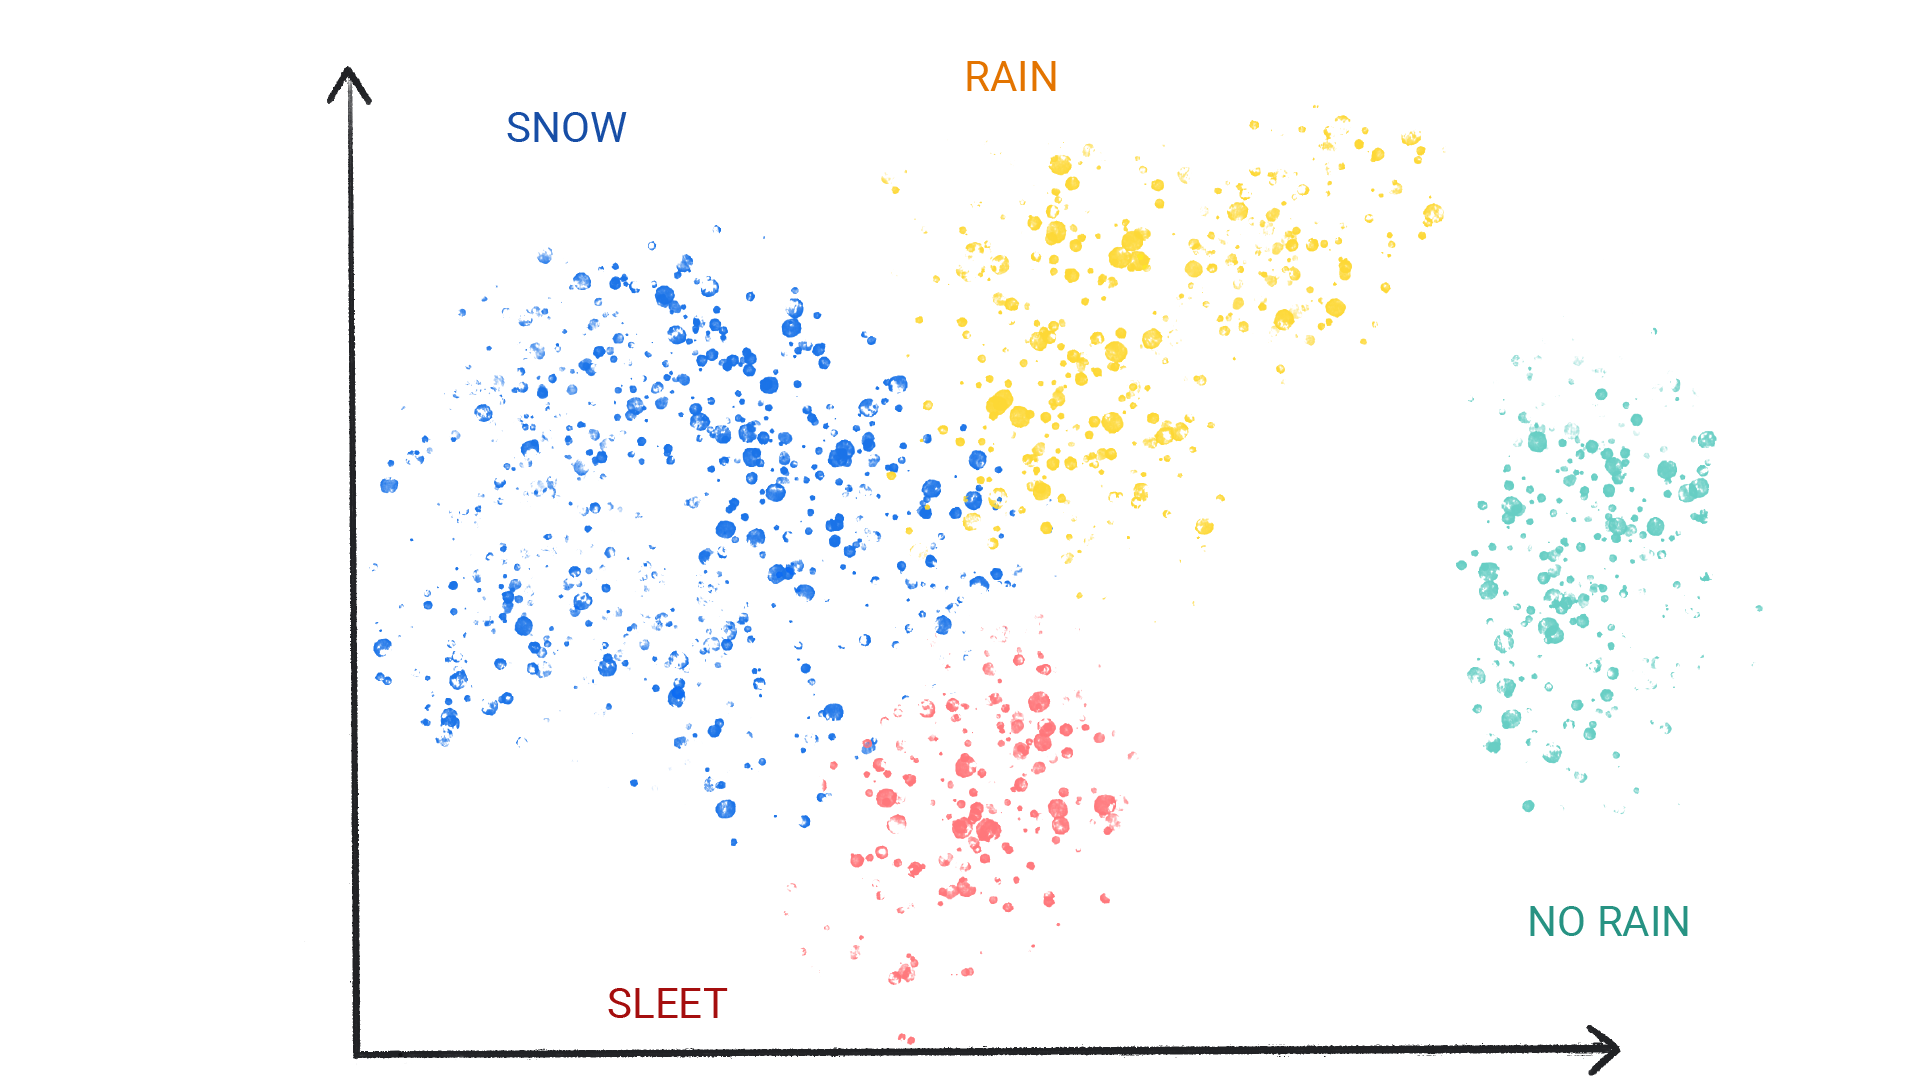 صورة تعرض نقاطًا ملونة في مجموعات عنقودية واحدة تحمل التصنيف &quot;ثلوج&quot; و&quot;مطر&quot; و&quot;برَد&quot; و&quot;عدم تساقط أمطار&quot;.